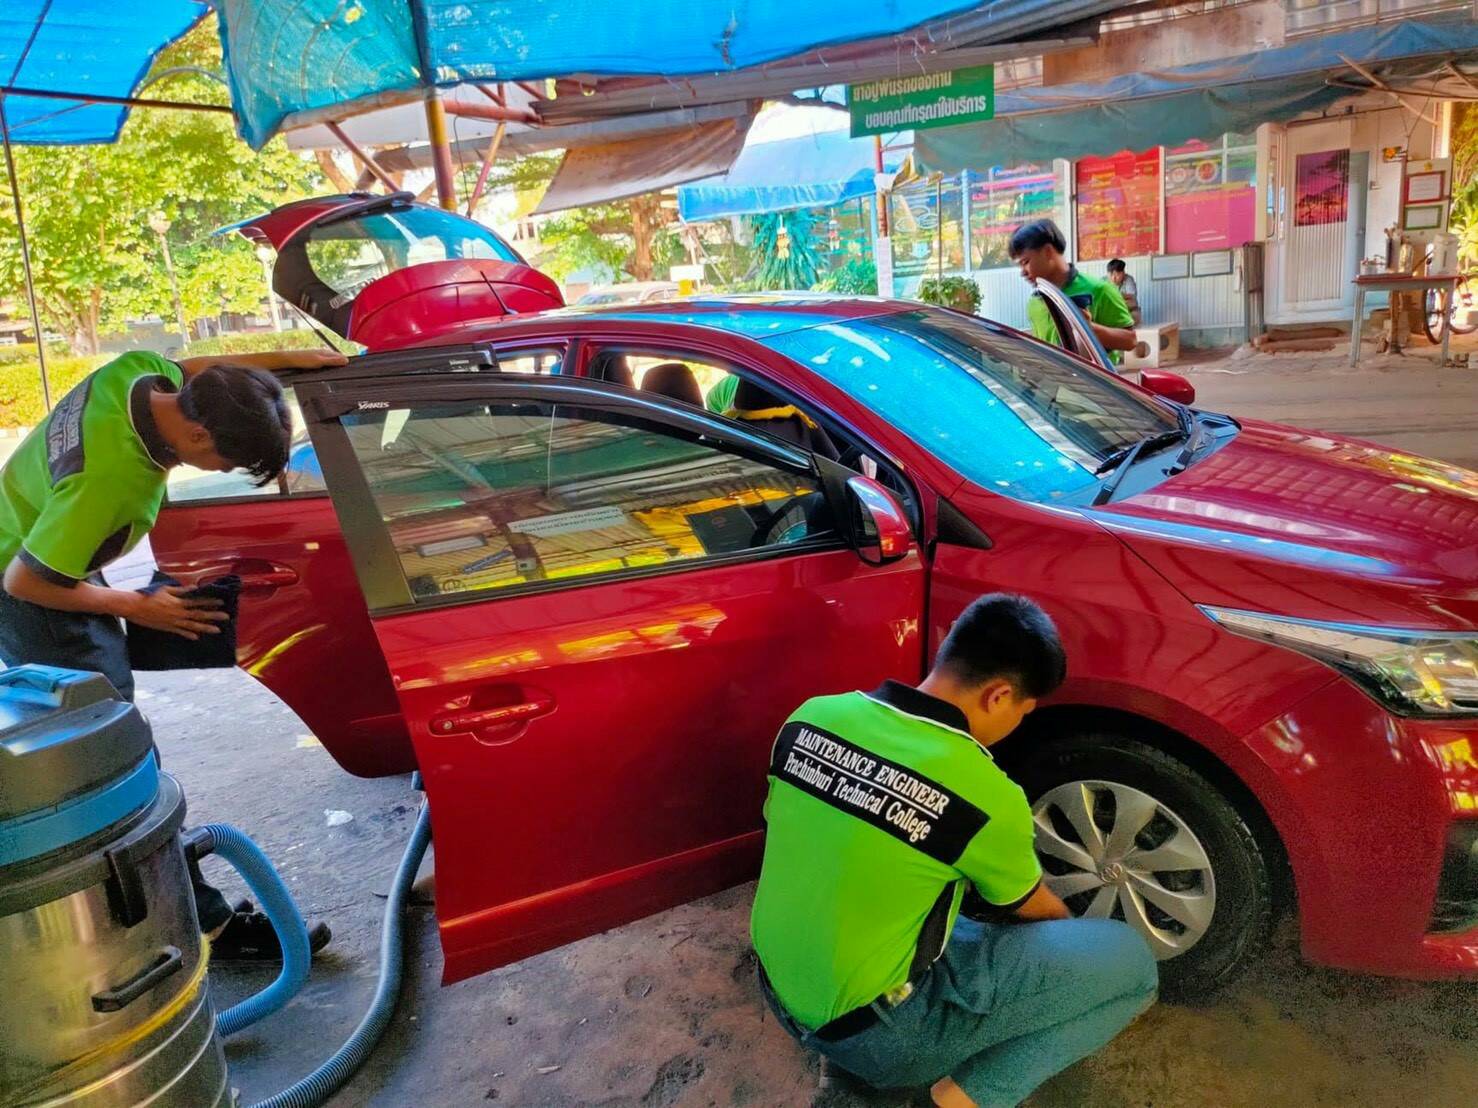 ยืนหนึ่งด้านบริการ ! เด็กเทคนิคปราจีนเปิดศูนย์ ME Car Care ให้บริการล้างอัดฉีดและเคลือบเงารถยนต์และรถจักรยานยนต์ สร้างรายได้หลายหมื่นบาทต่อเดือน